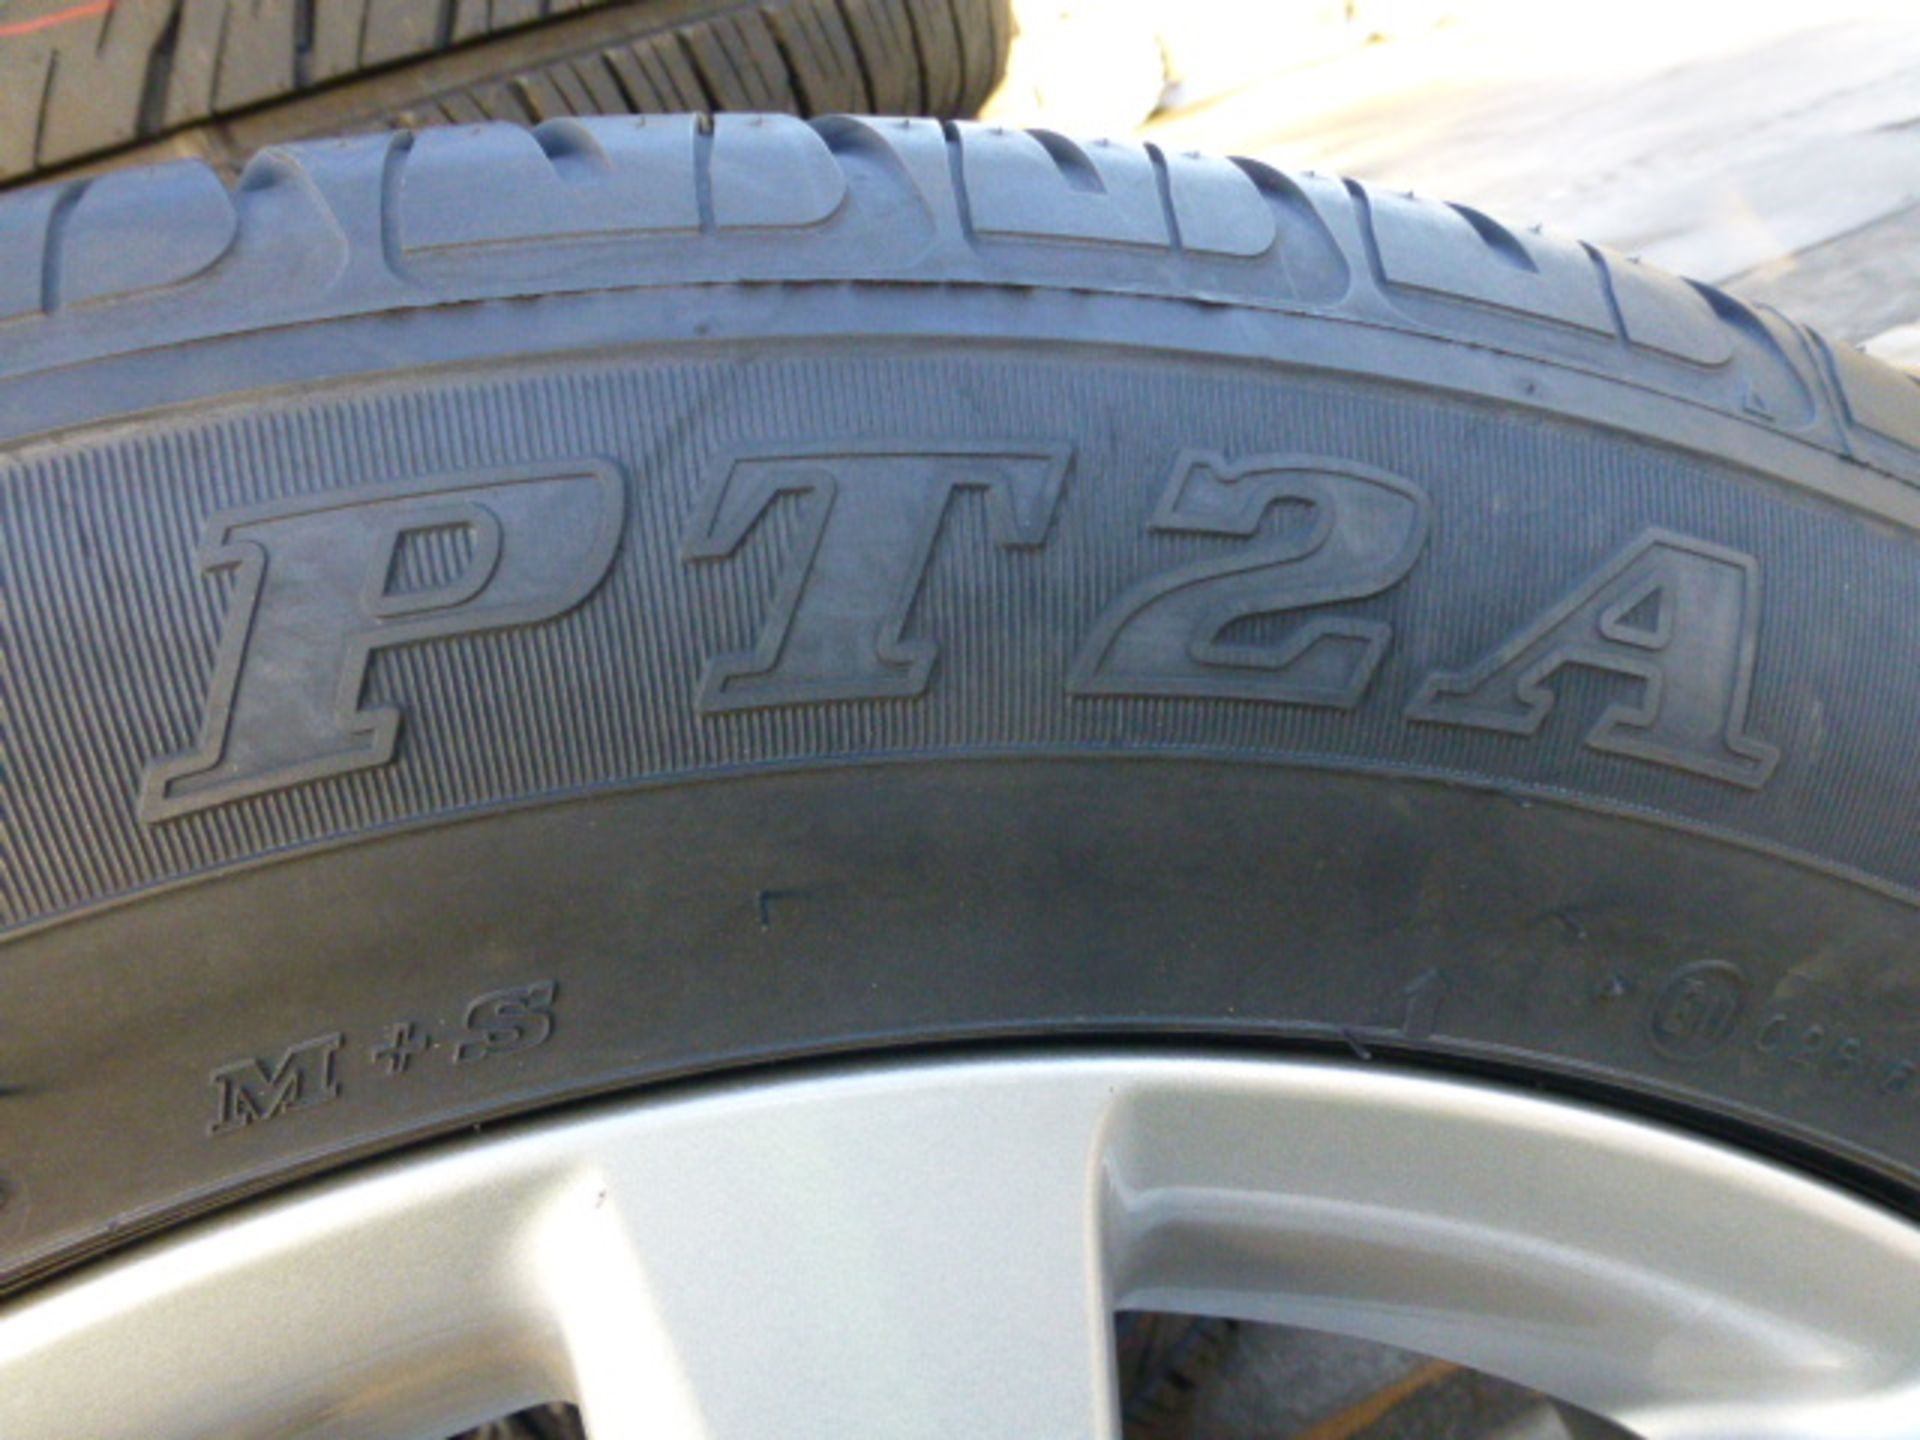 4 x Dunlop PT2A Grandtrek 285/50R20 Tyres on Land Cruiser V8 Rims - Image 3 of 6